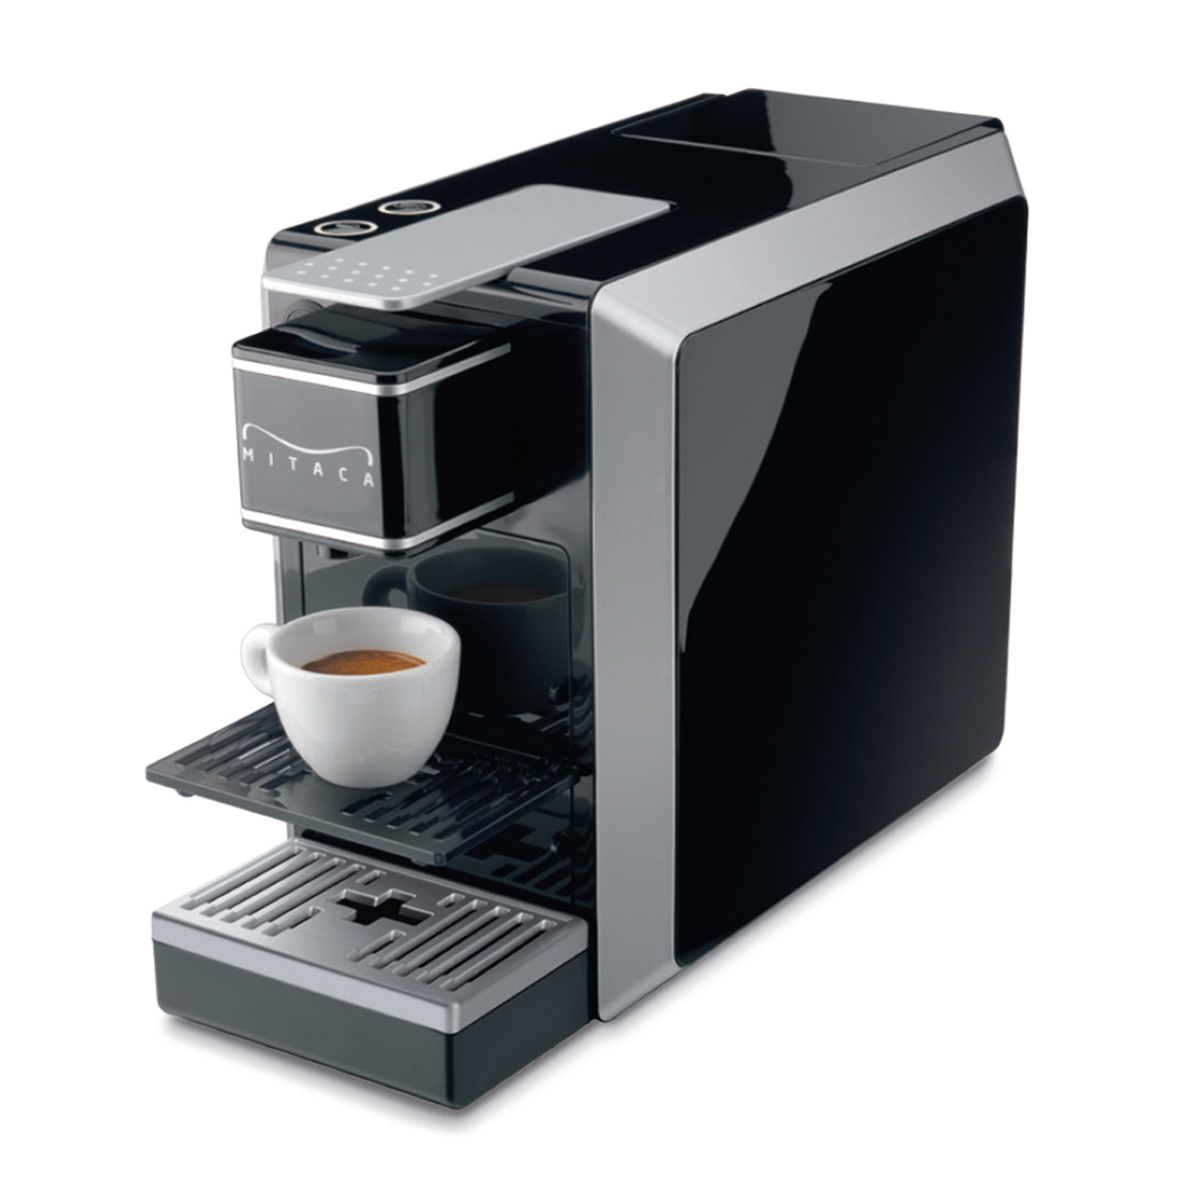 Machine à Café Illy Mitaca I9 (400 Doses)